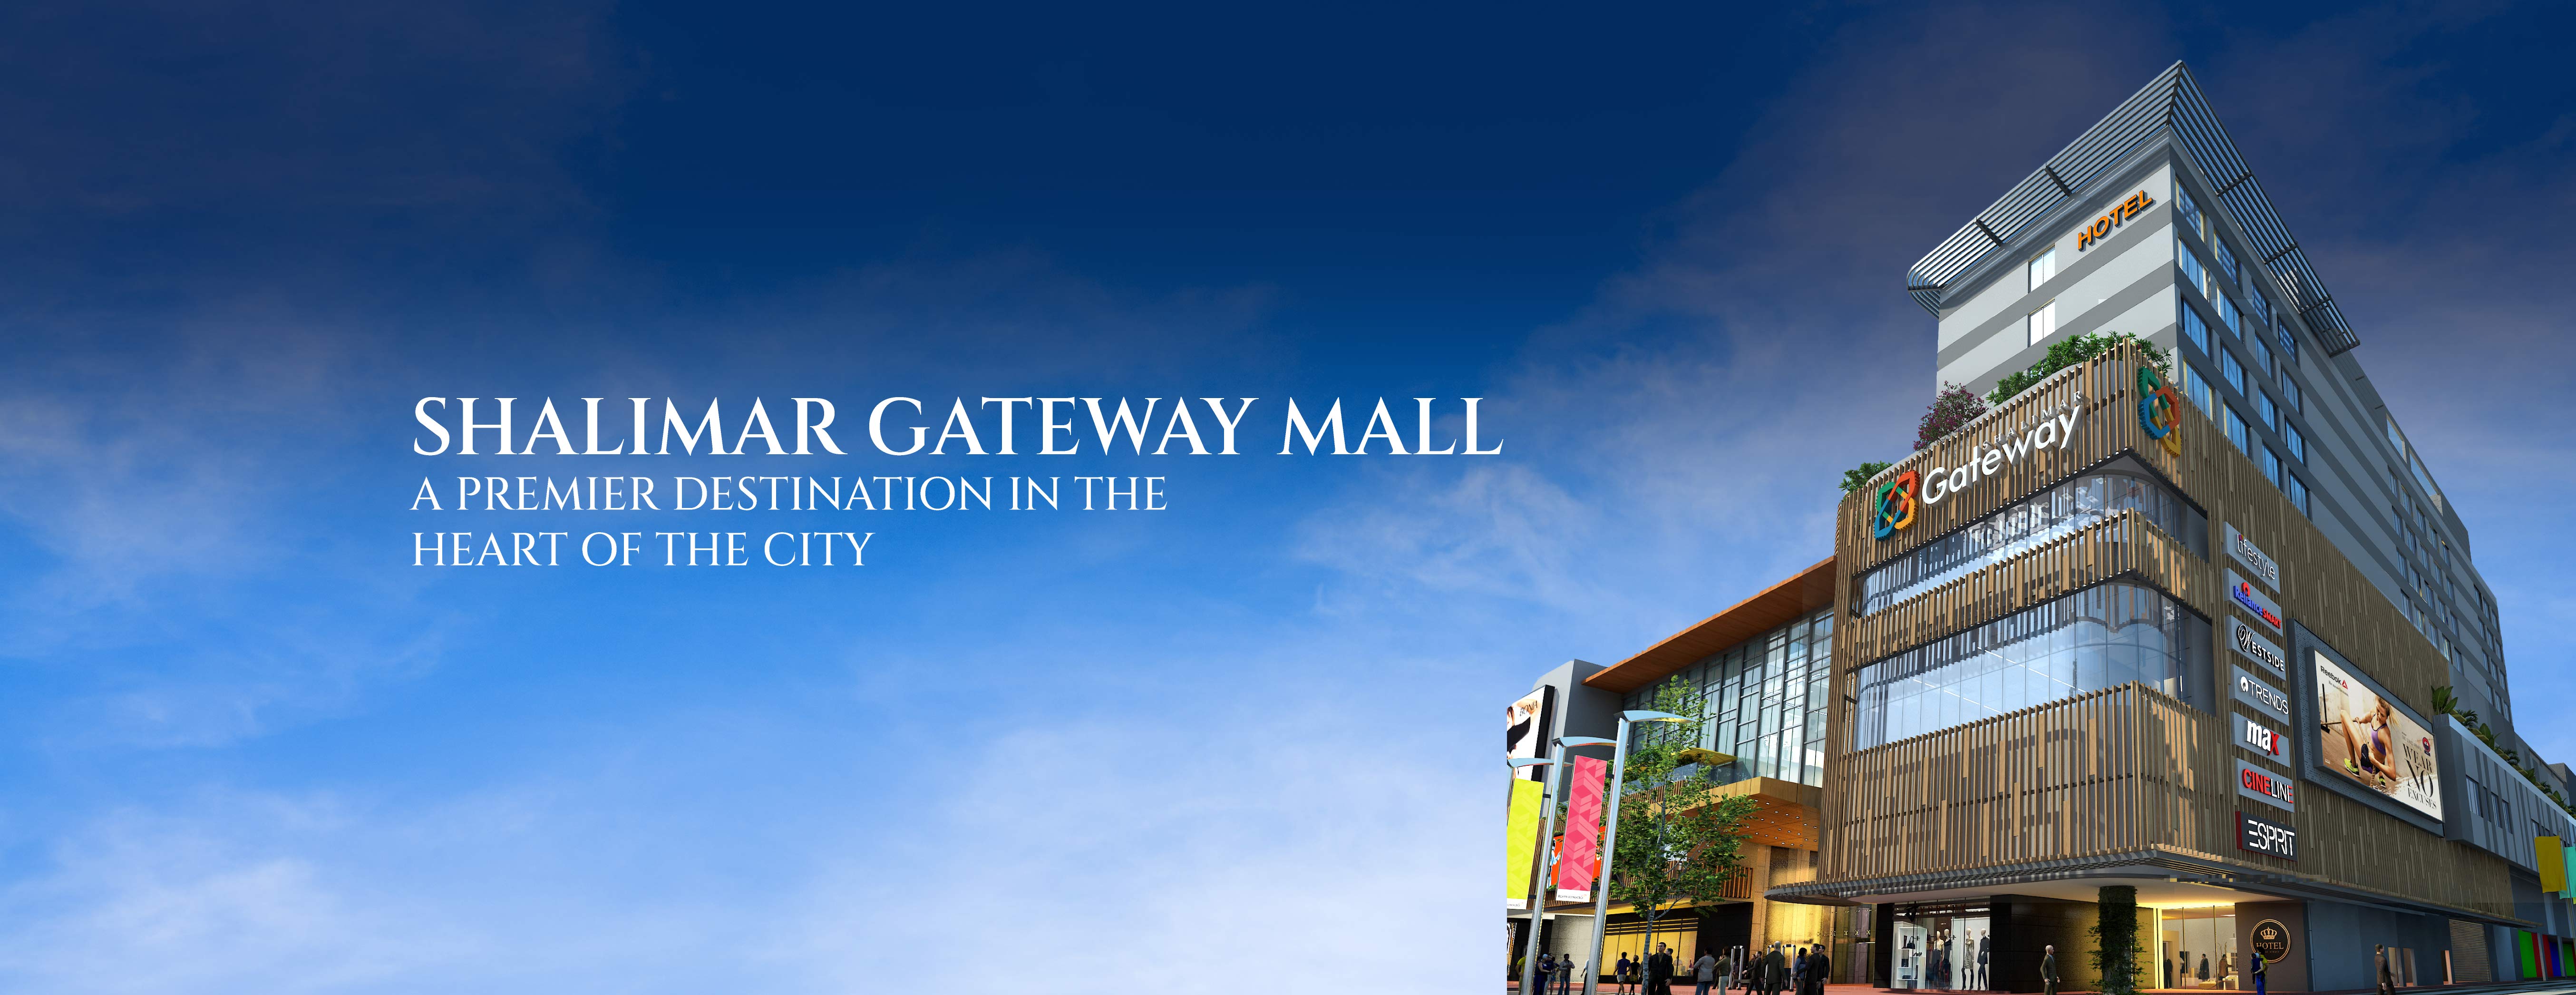 The Gateway mall